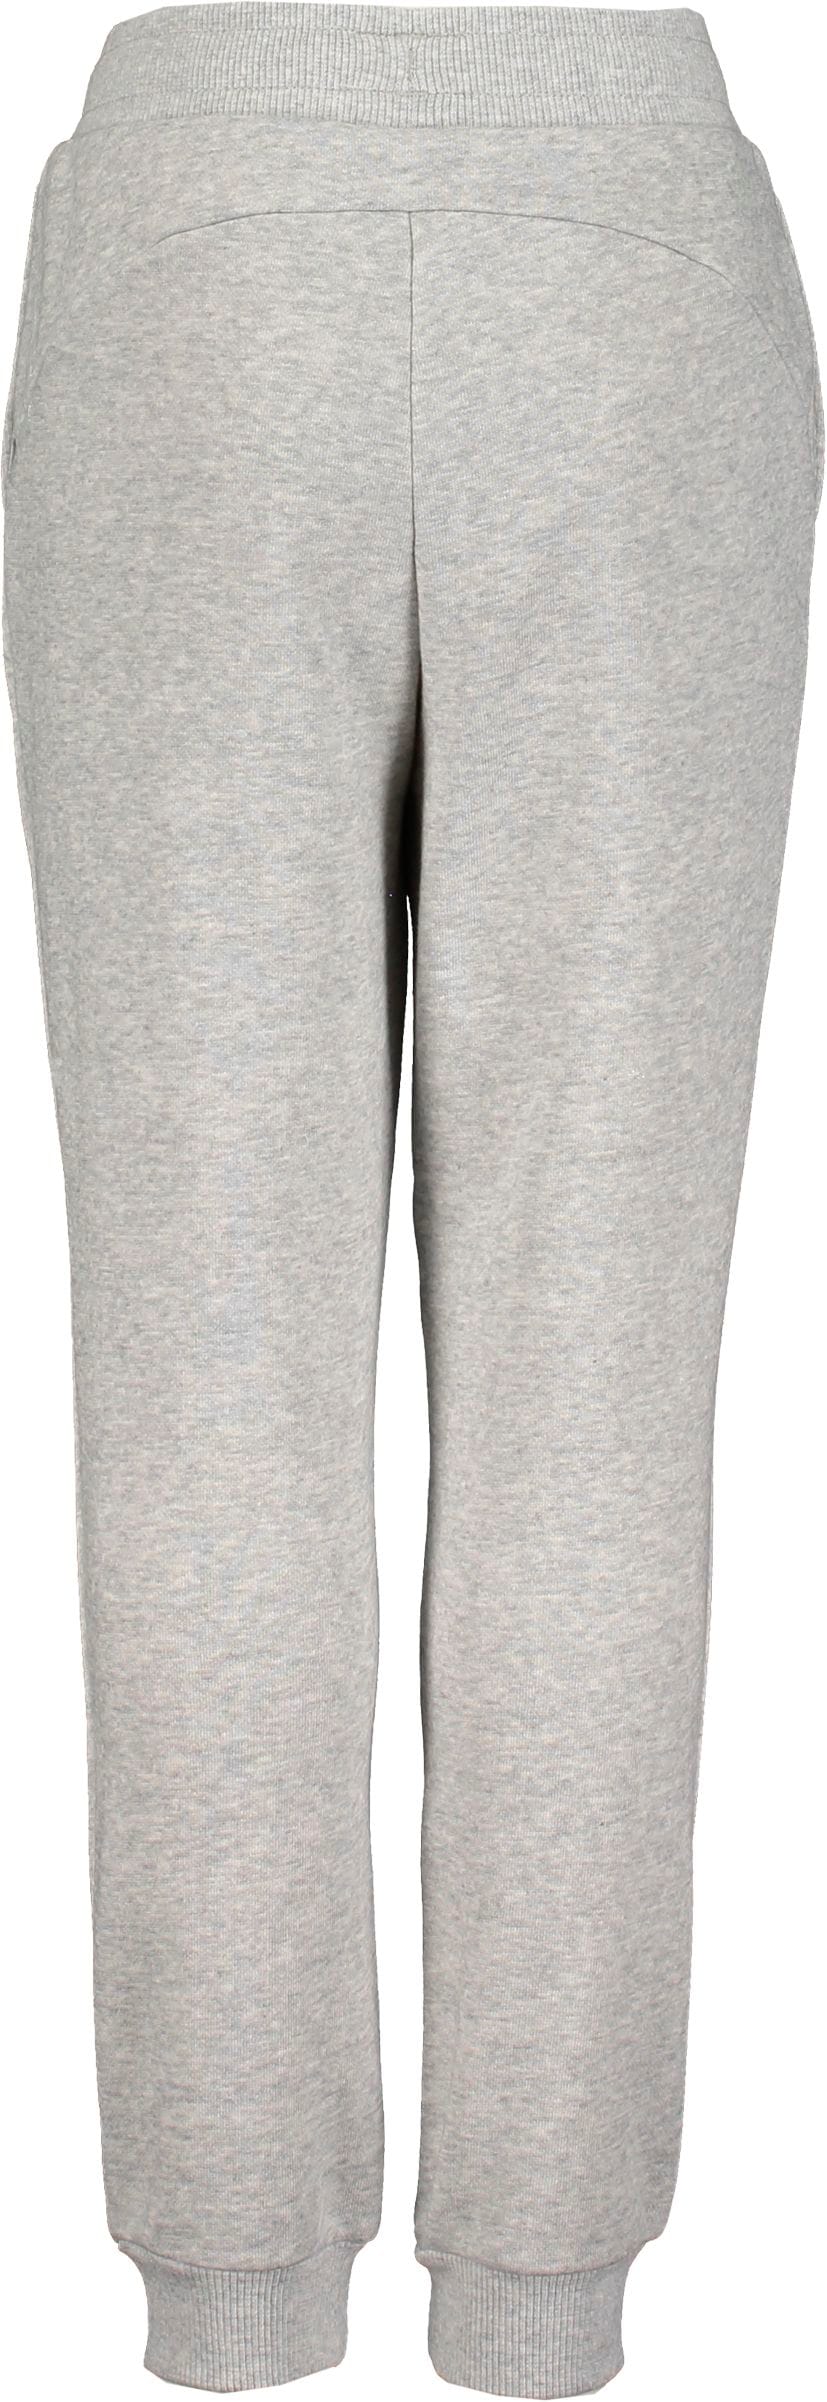 PUMA, MASS MERCHANT Style Sweatpants FL G